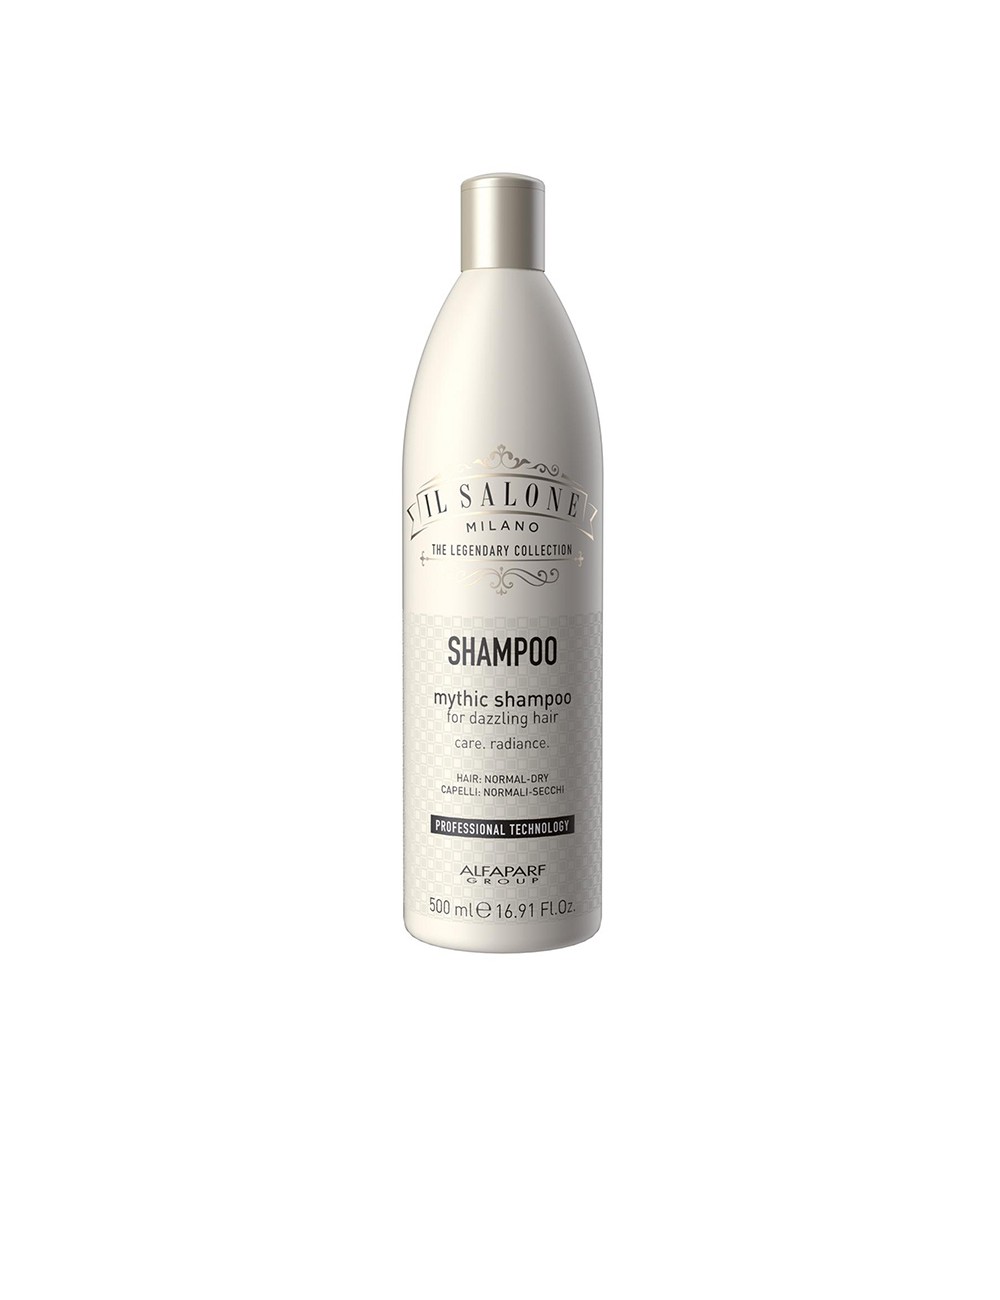 MYTHIC shampoo for dazzling hair 500 ml